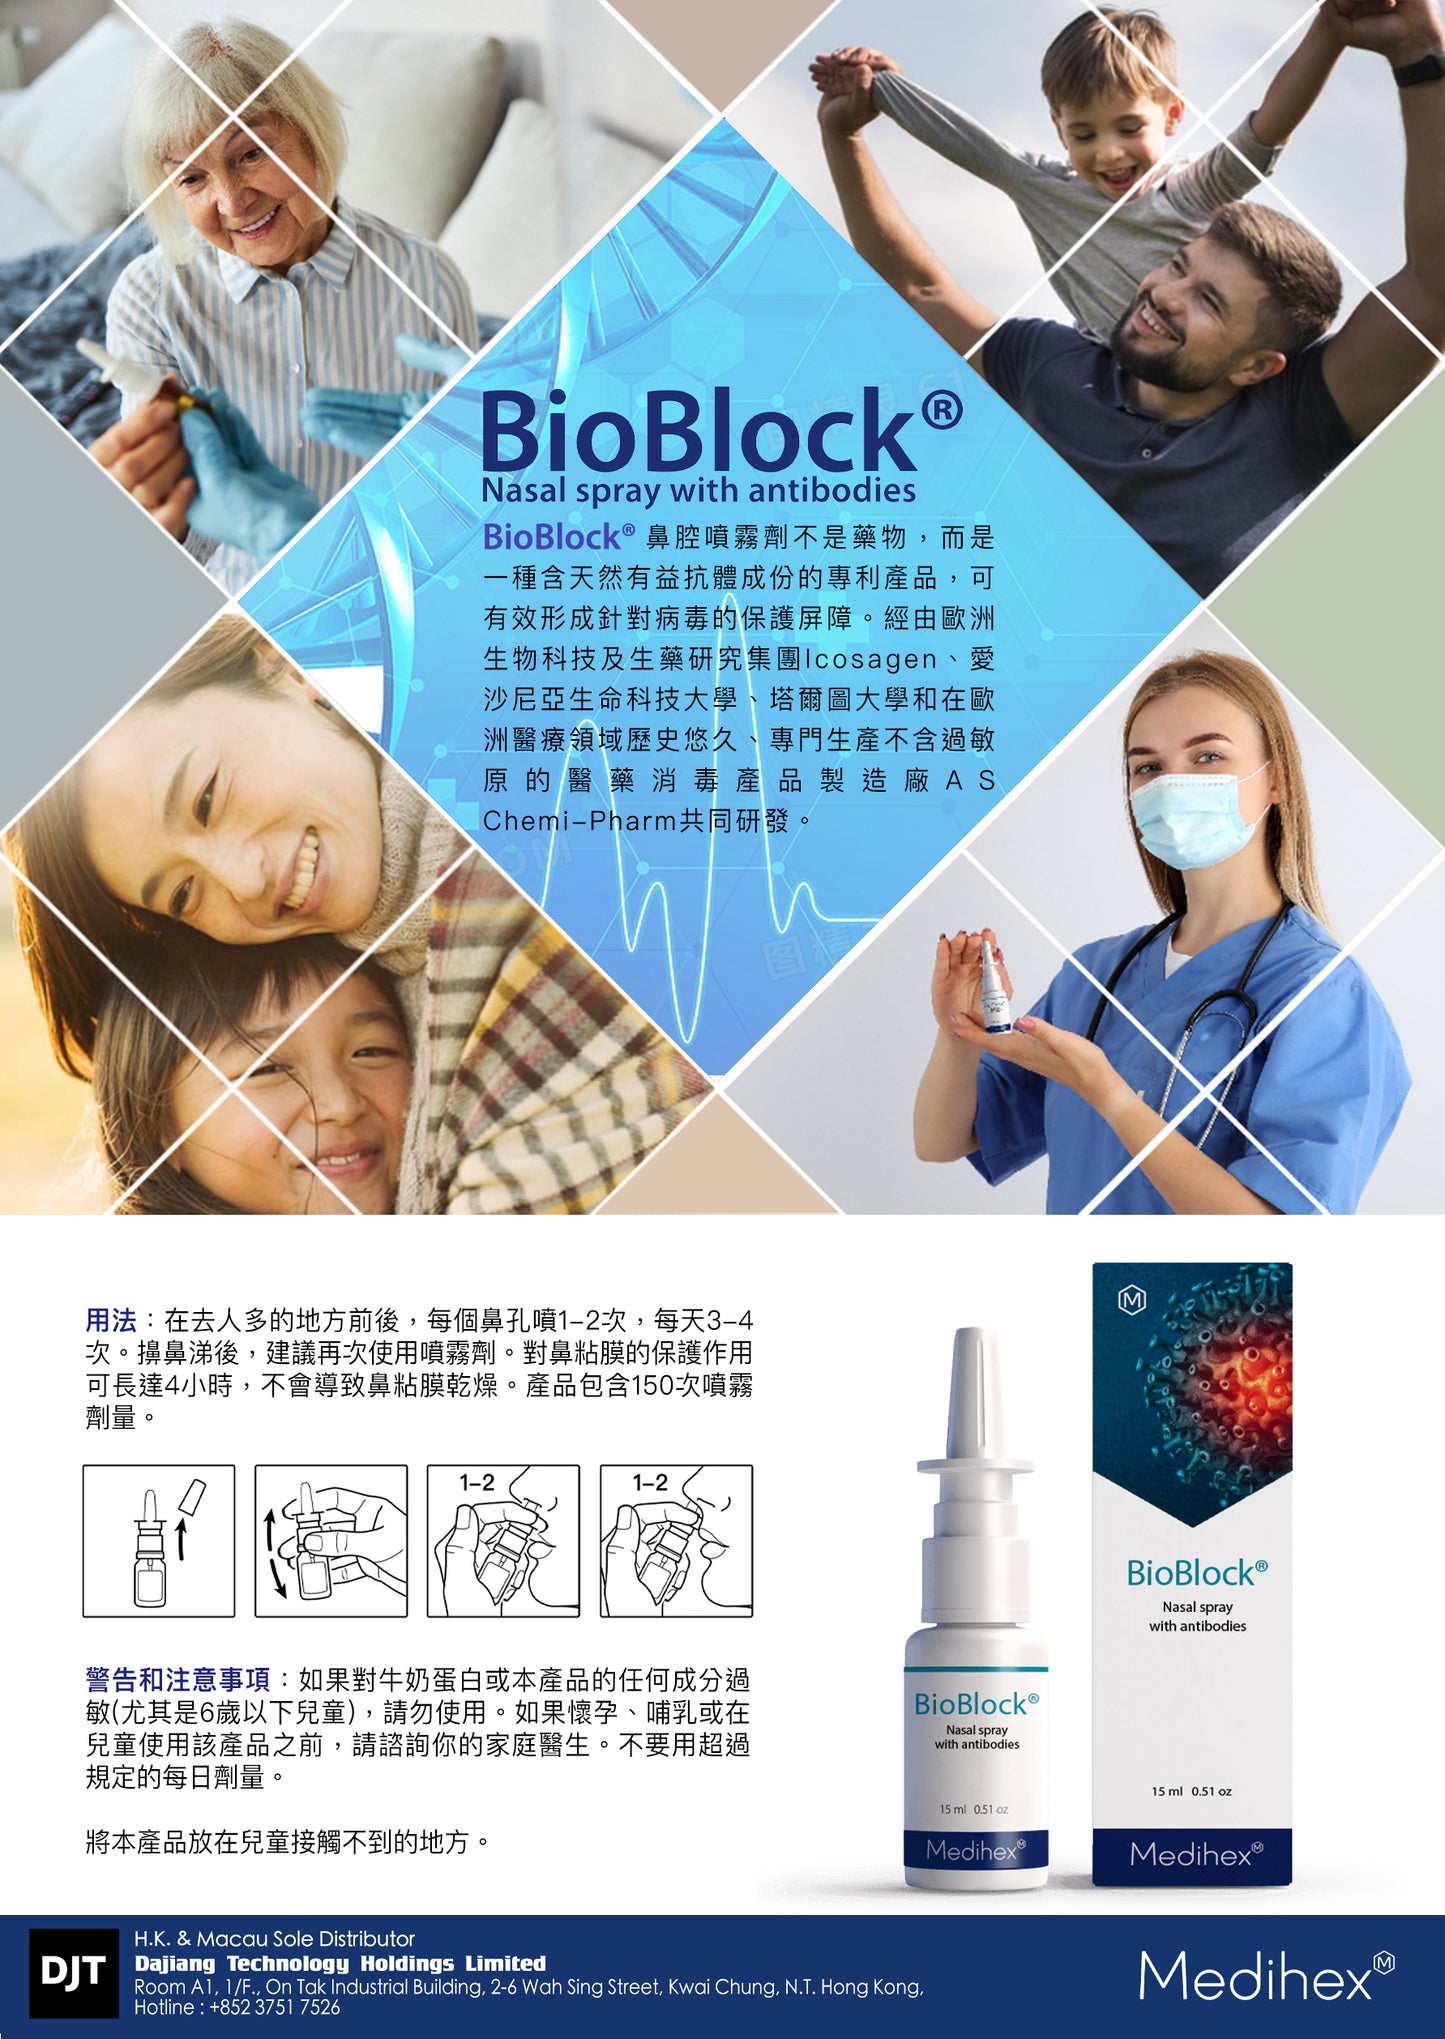 BioBlock Nasal spray with antibodies against SARS-CoV-2